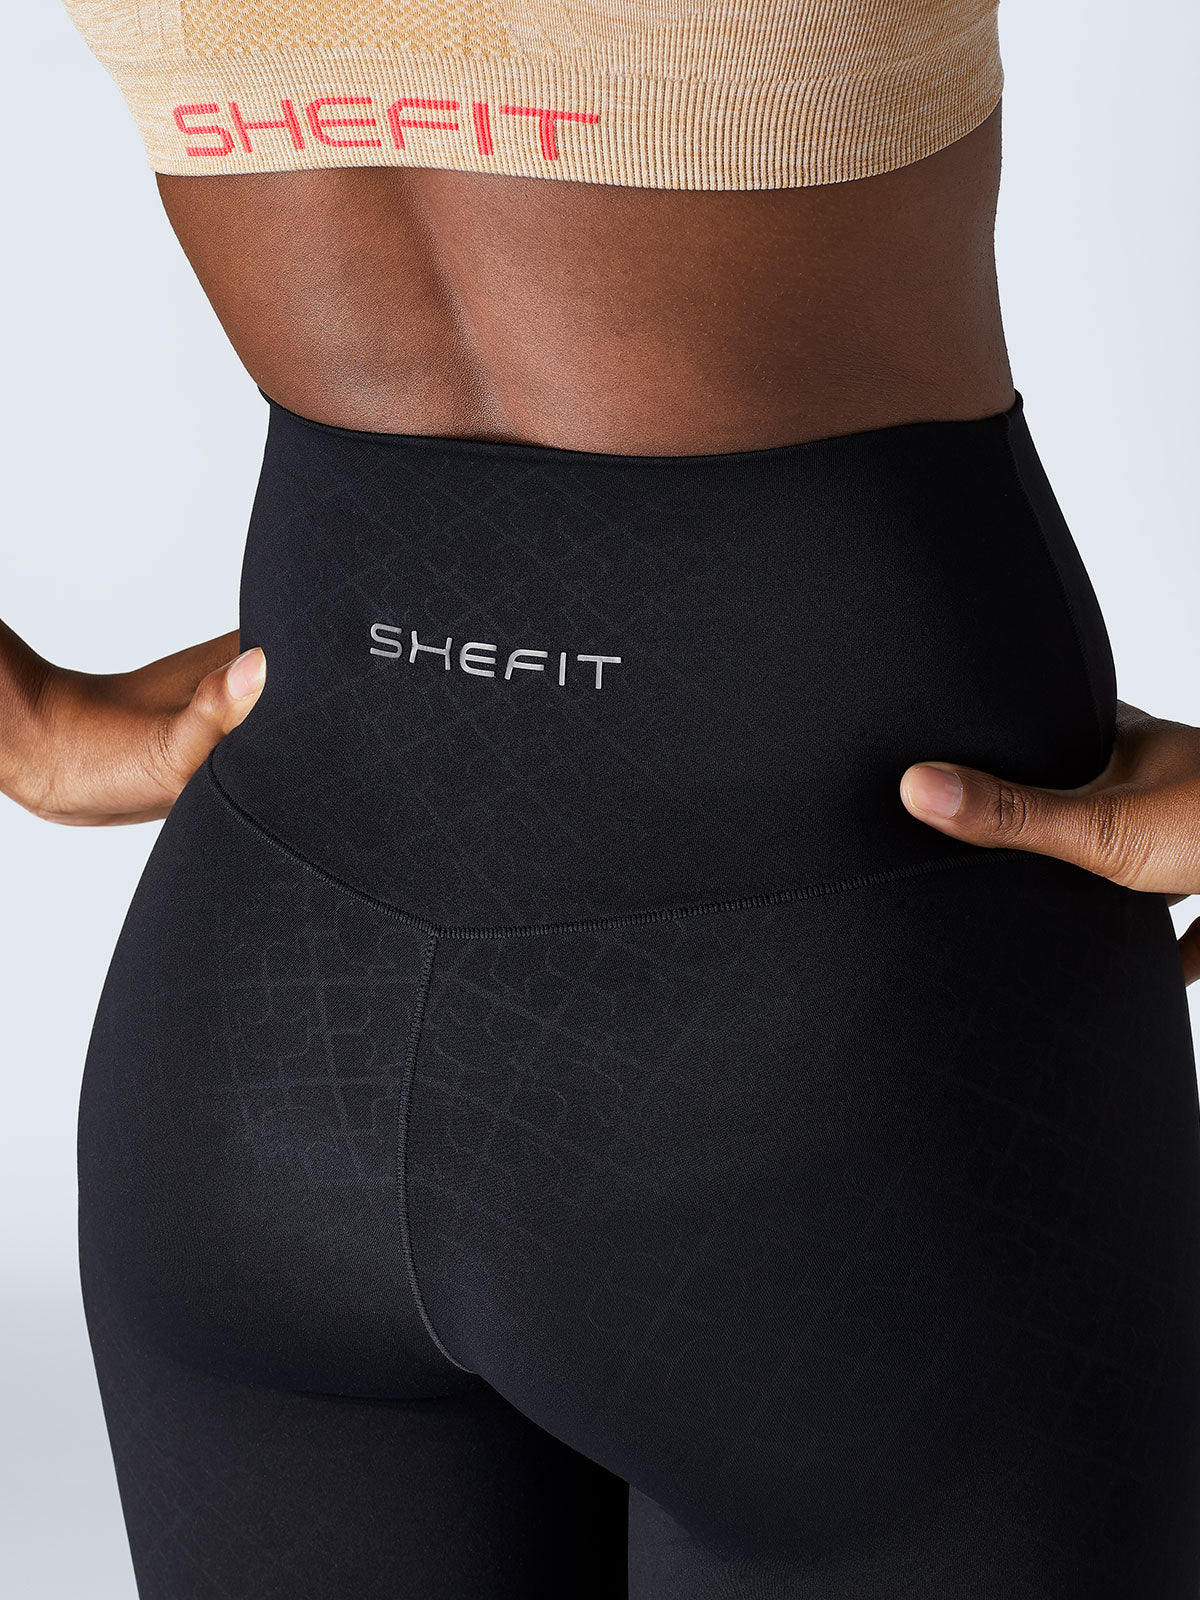 SHEFIT Boss Performance Leggings for Women, Black, Medium 